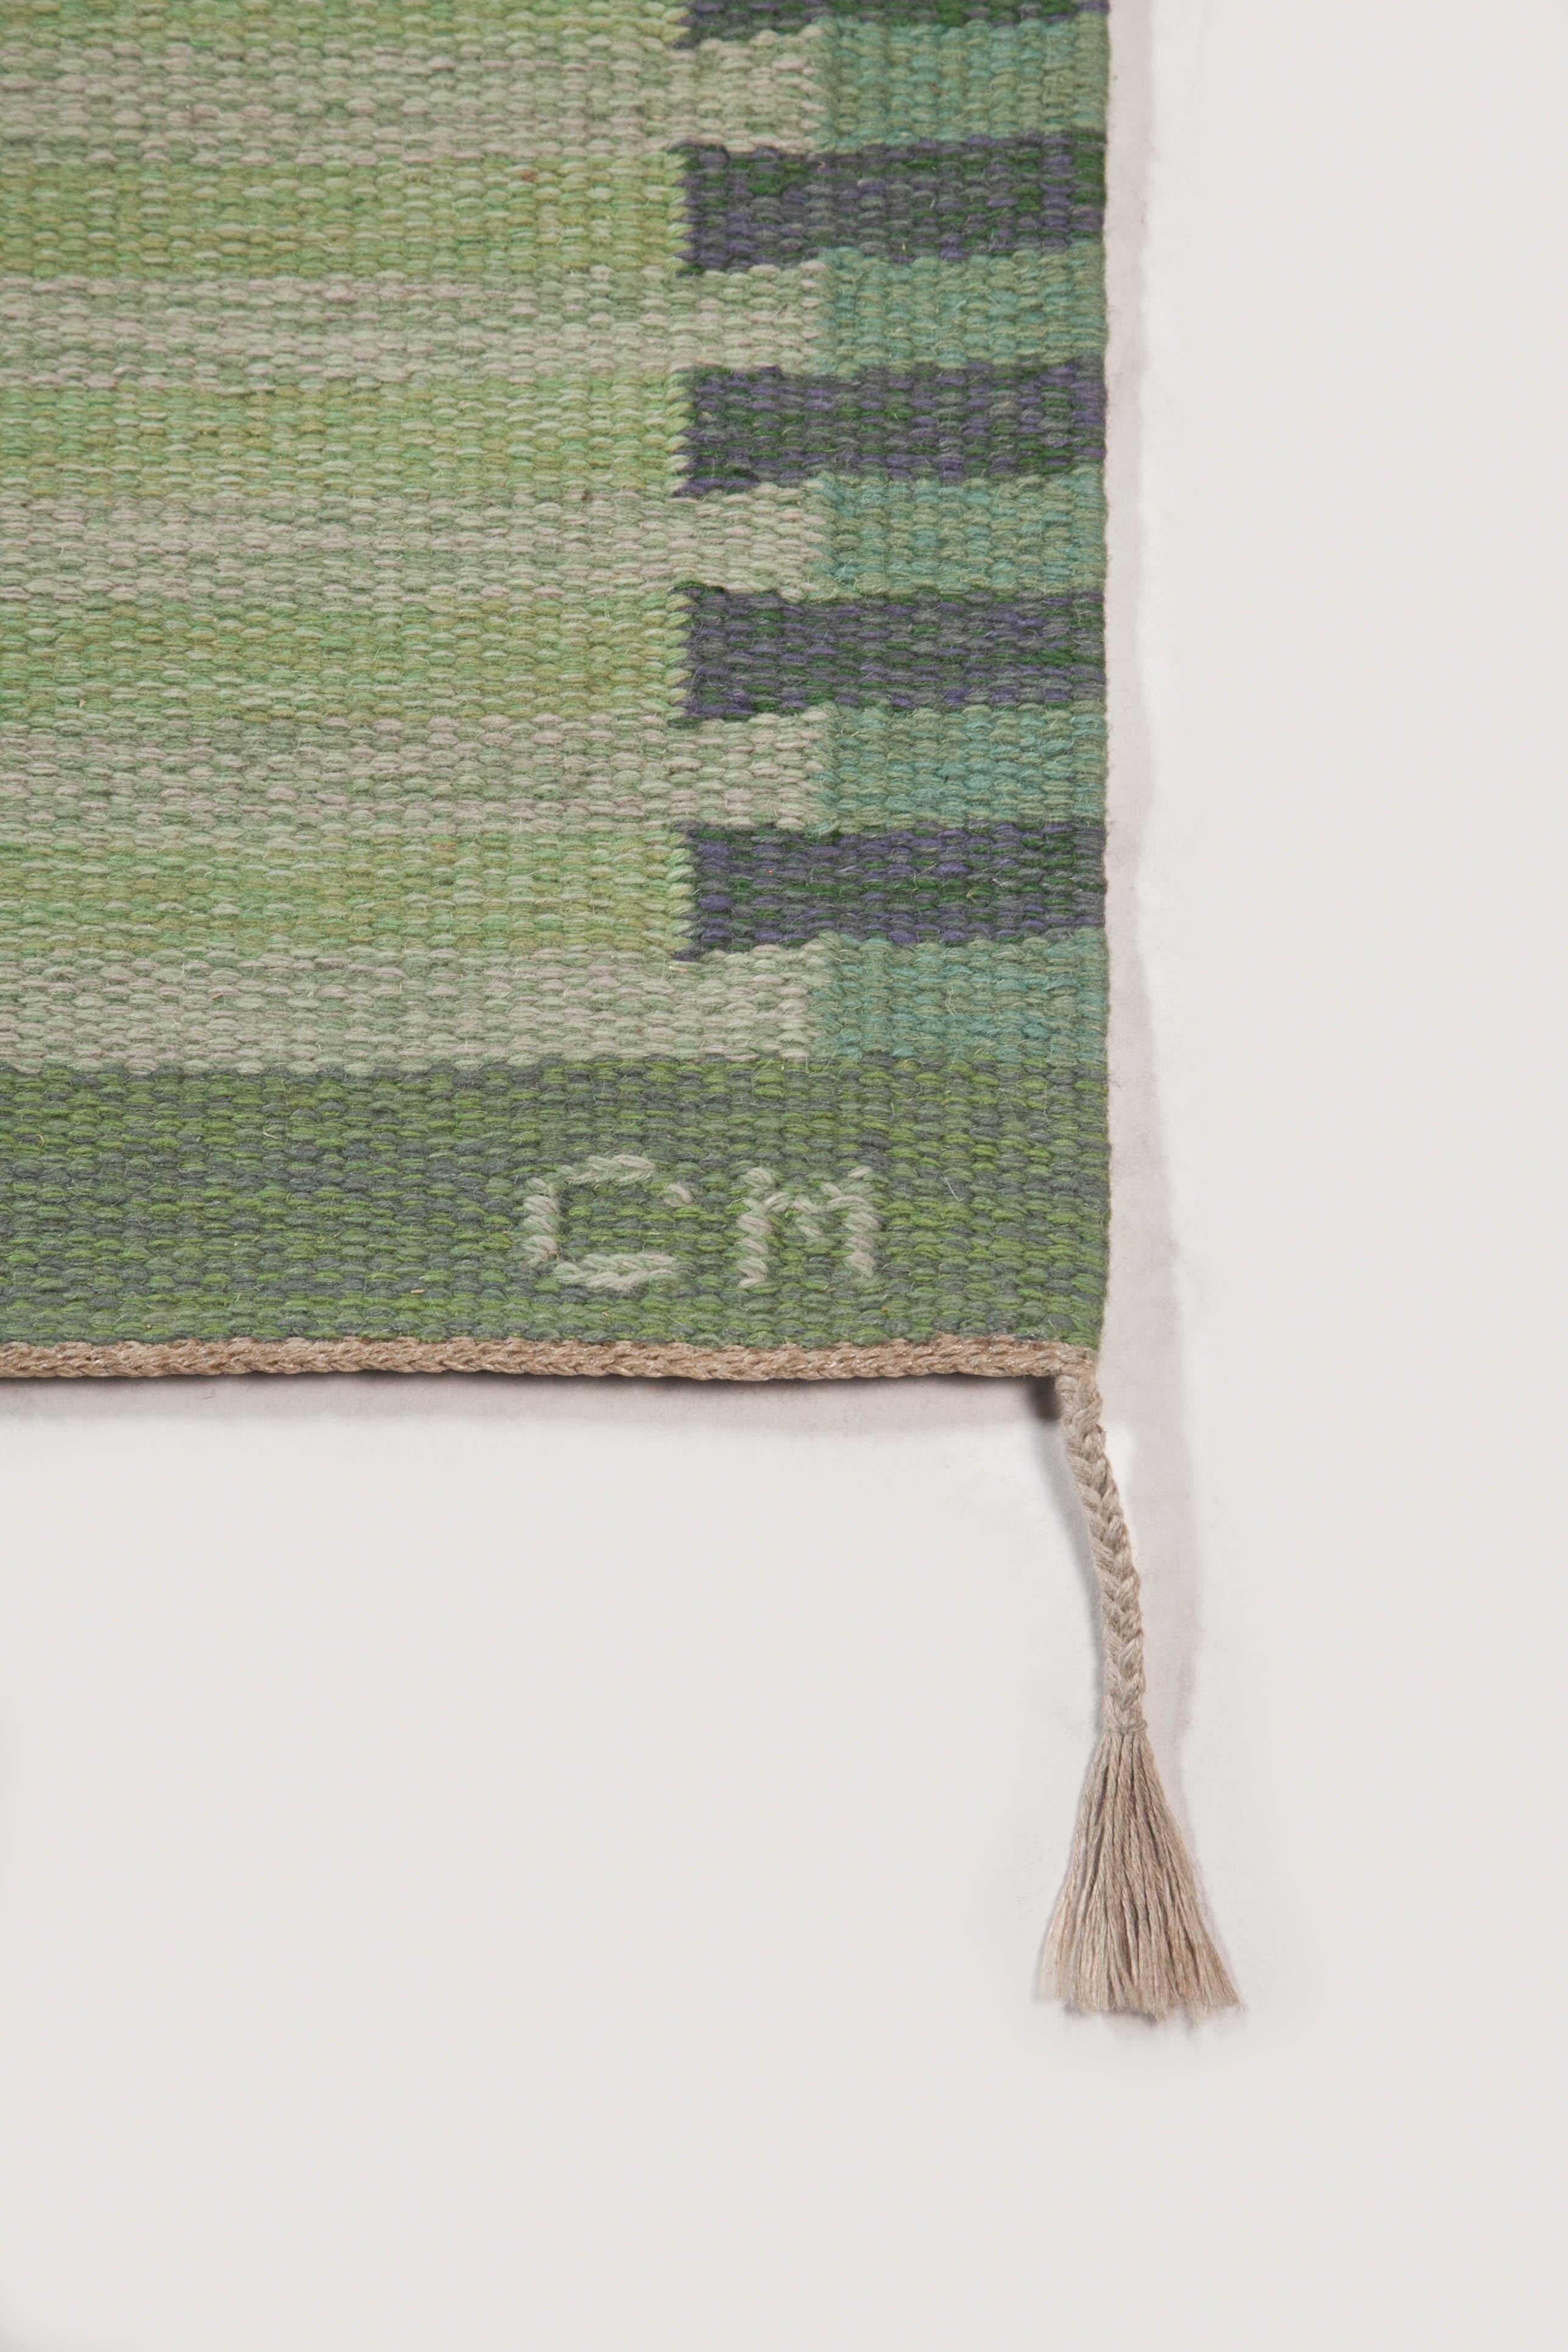 Carl Malmsten Swedish Flat Weave “Capellagården” Runner, Sweden 1960's For Sale 4